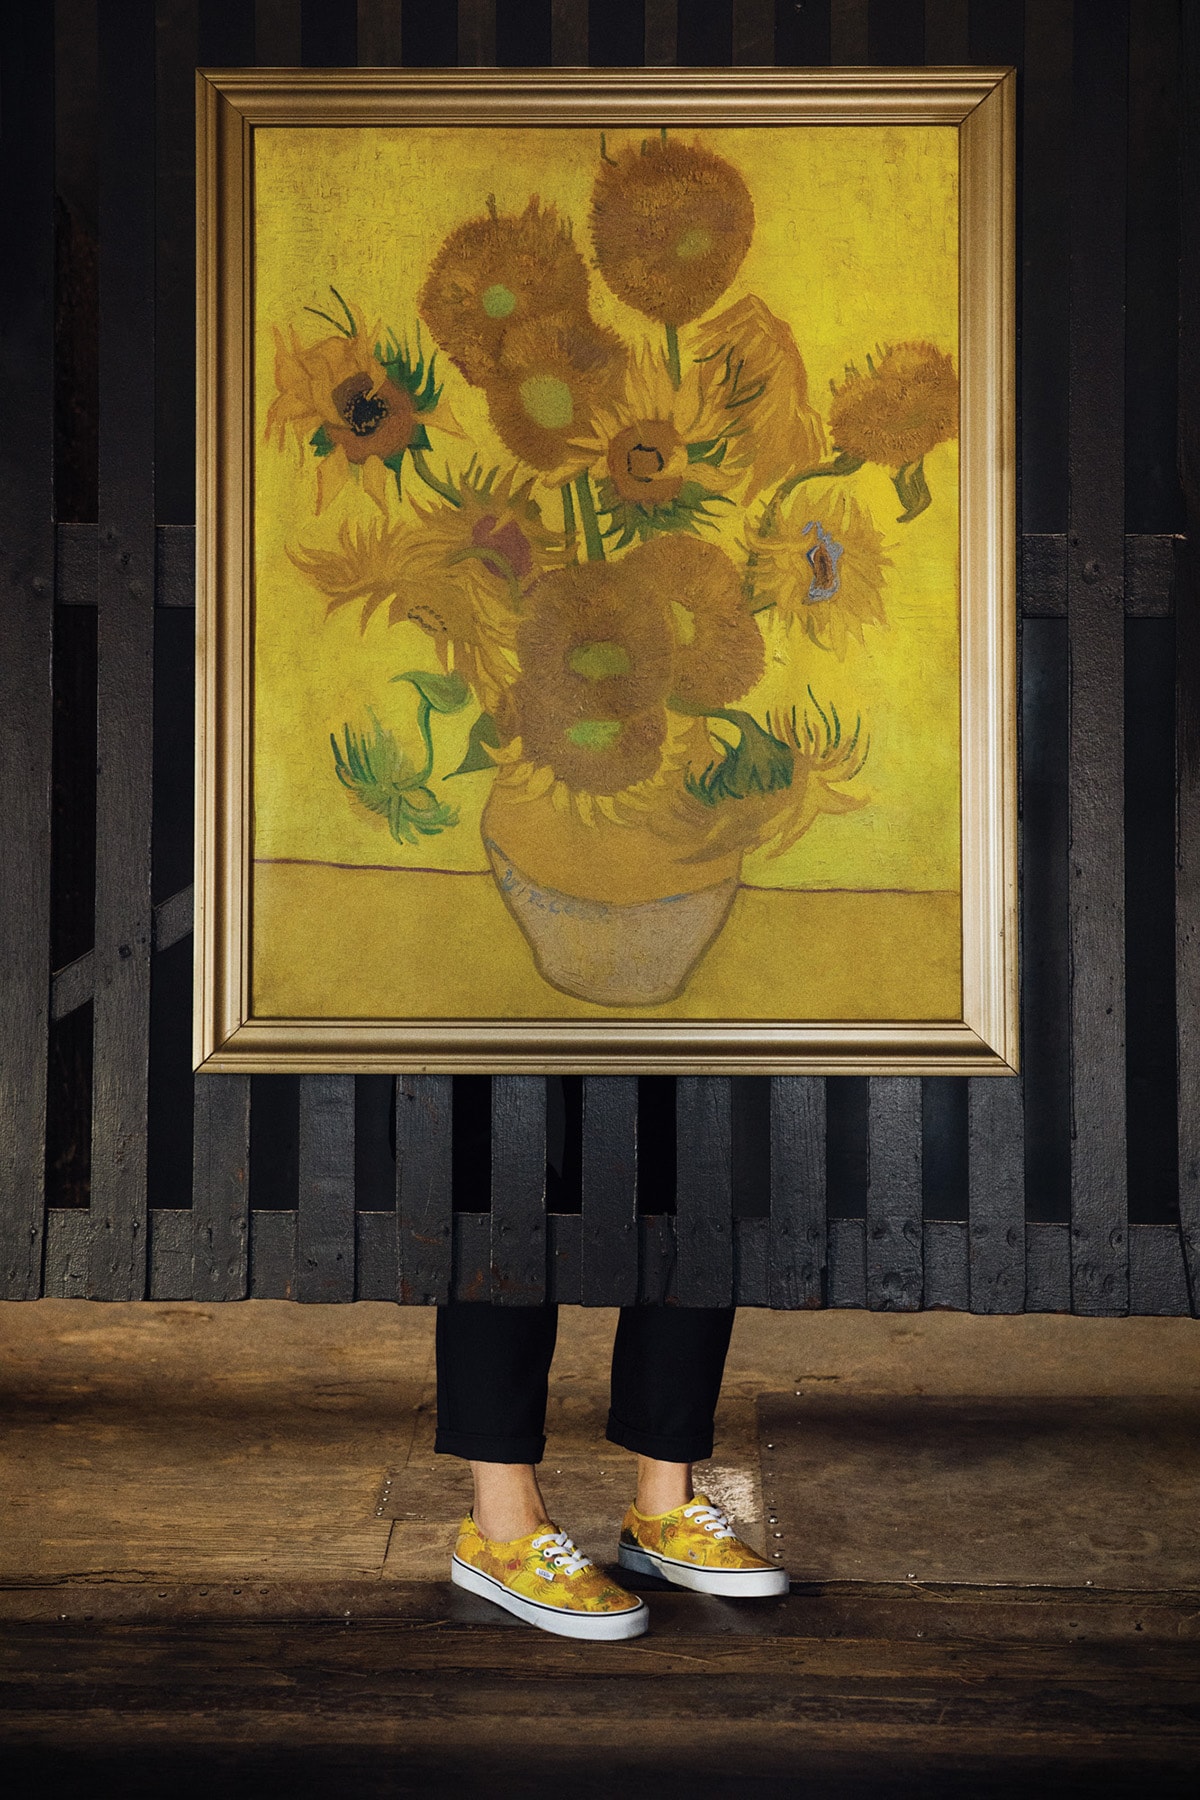 後期印象派の巨匠ゴッホ x Vans によるコラボカプセルの公式リリース情報＆ルックブックが到着 近代美術の父が遺した名画と定番ストリートアイテムを融合させた指名買い必至の逸品が遂にベールを脱ぐ Pablo Picasso パブロ・ピカソ Johannes Vermeer ヨハネス・フェルメール Vincent Van Gogh フィンセント・ファン・ゴッホ Vans ヴァンズ 花咲くアーモンドの木の枝 ぶどう畑と農婦 ひまわり Skull in Profile Sk8-Hi Authentic 8月3日 オンラインサイト ウェブストア HYPEBEAST ハイプビースト